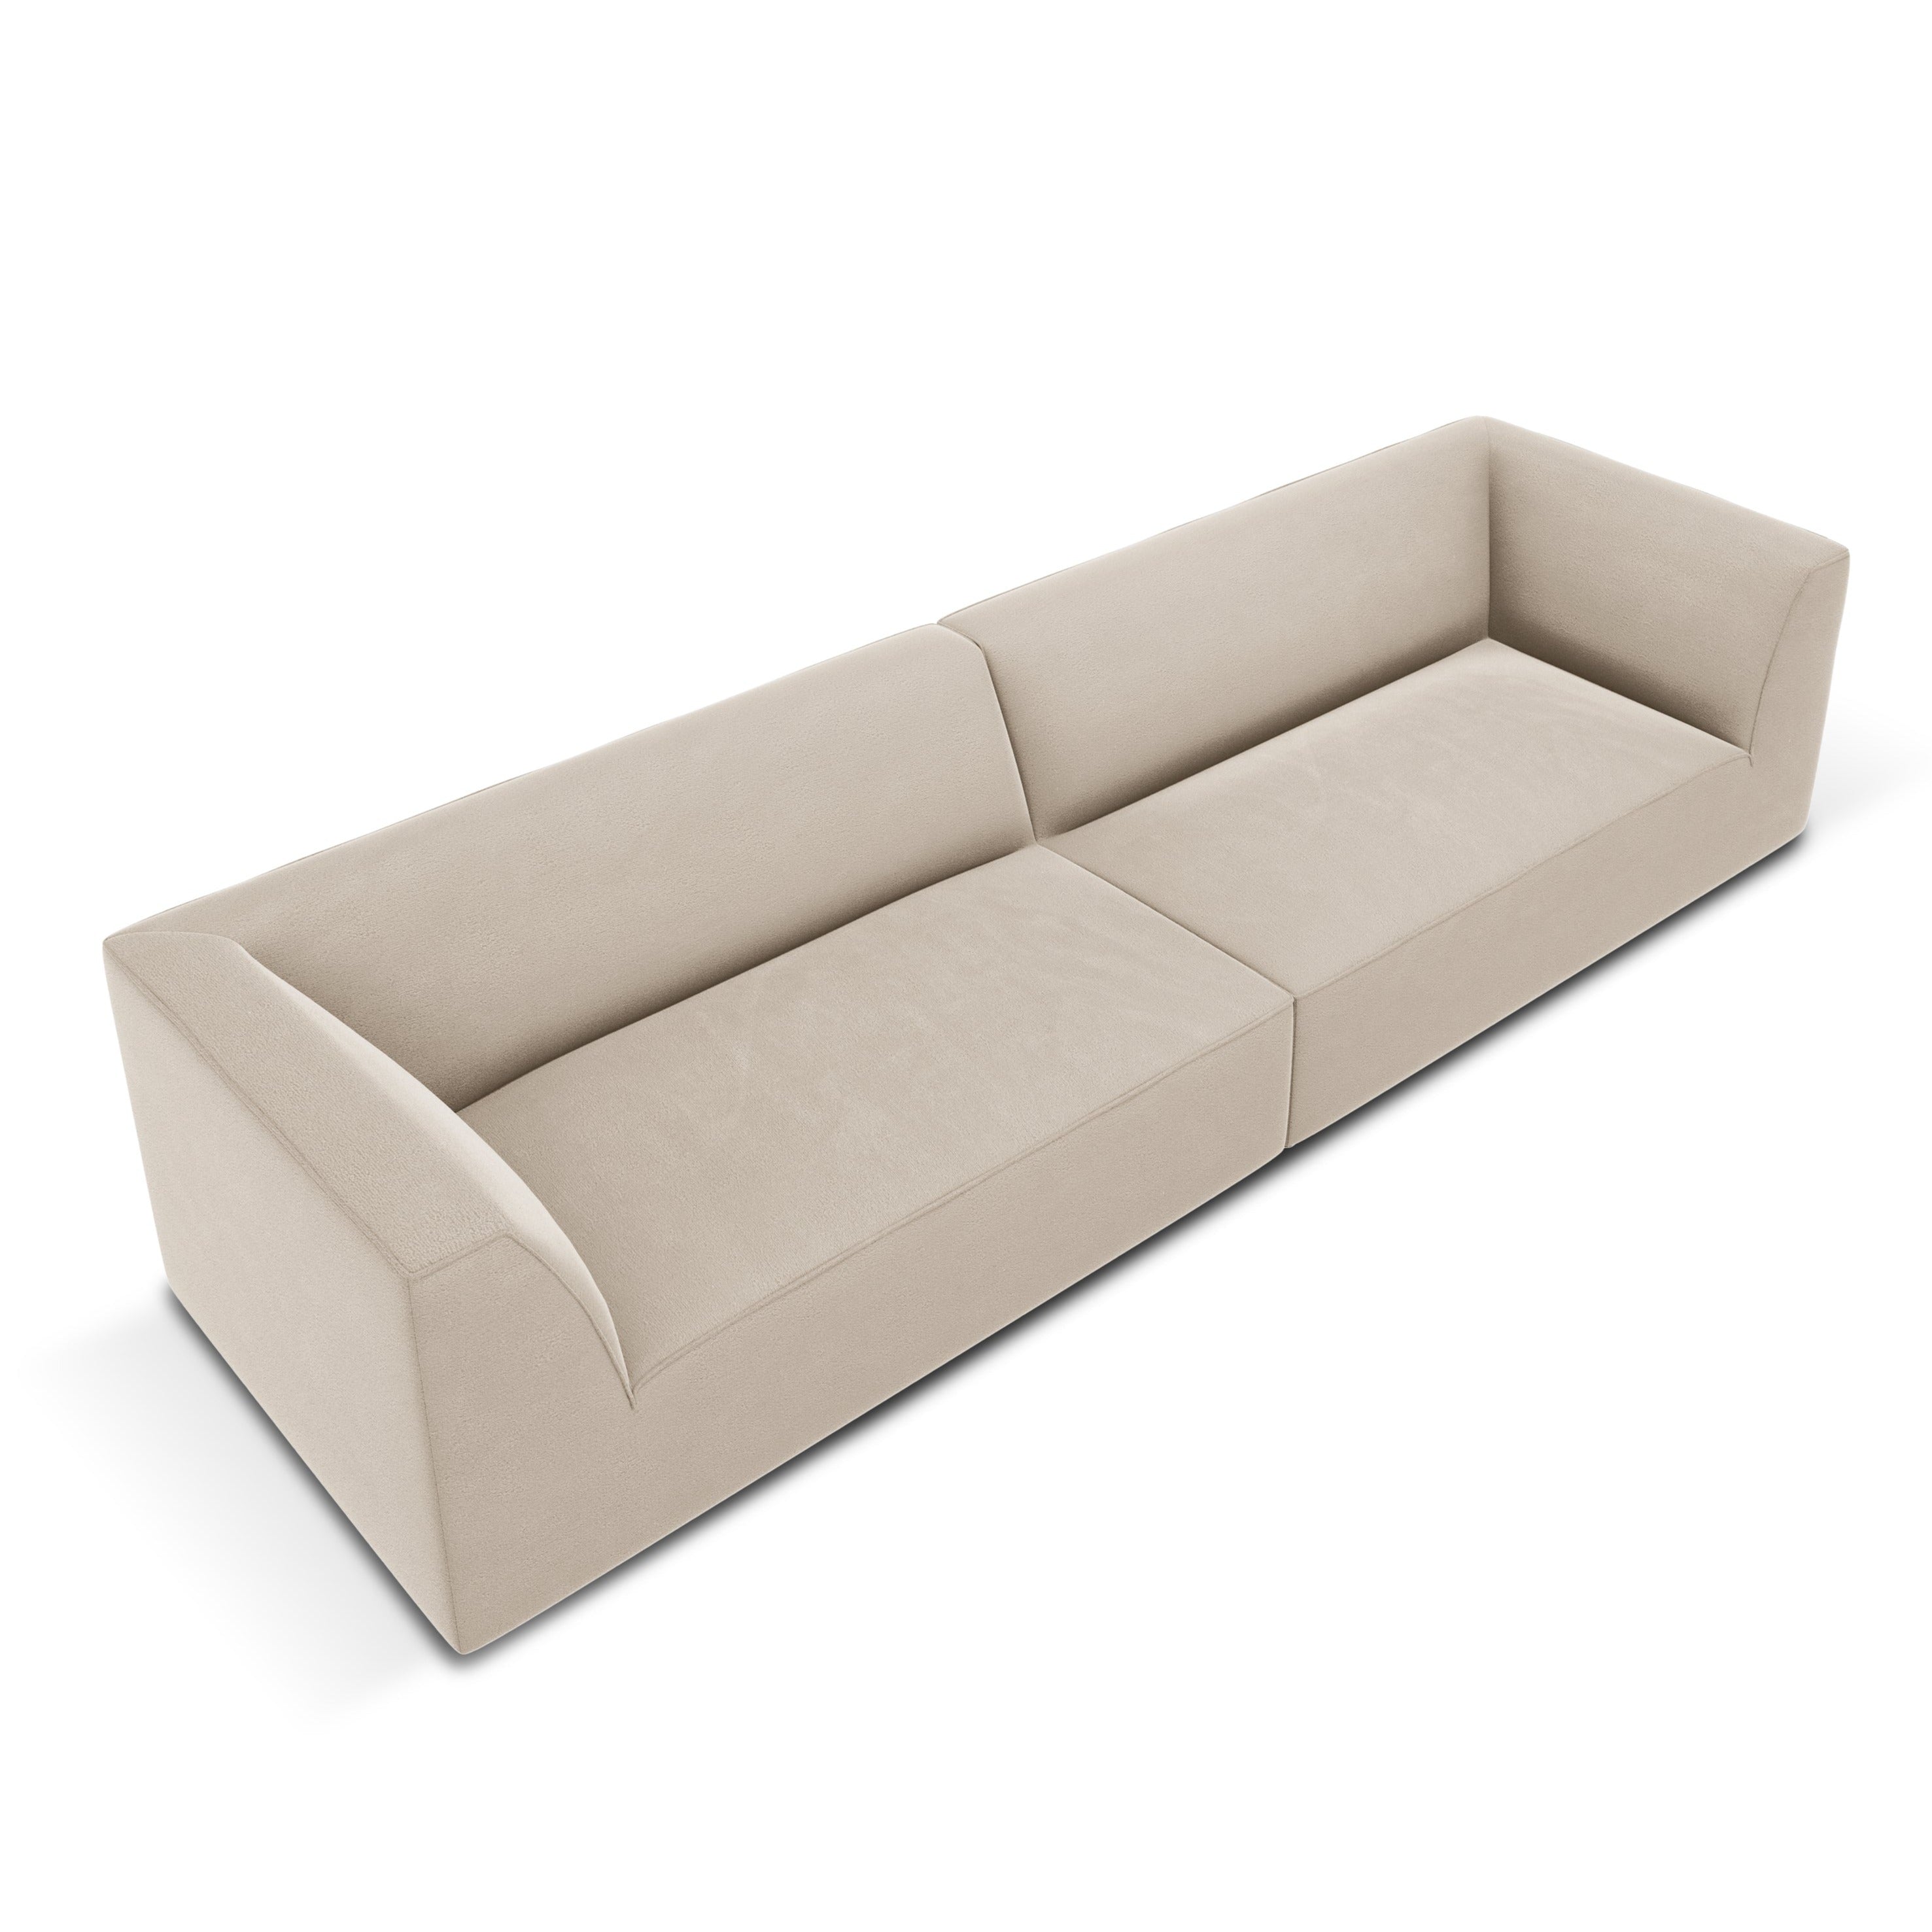 Beige velvet sofa with armrests